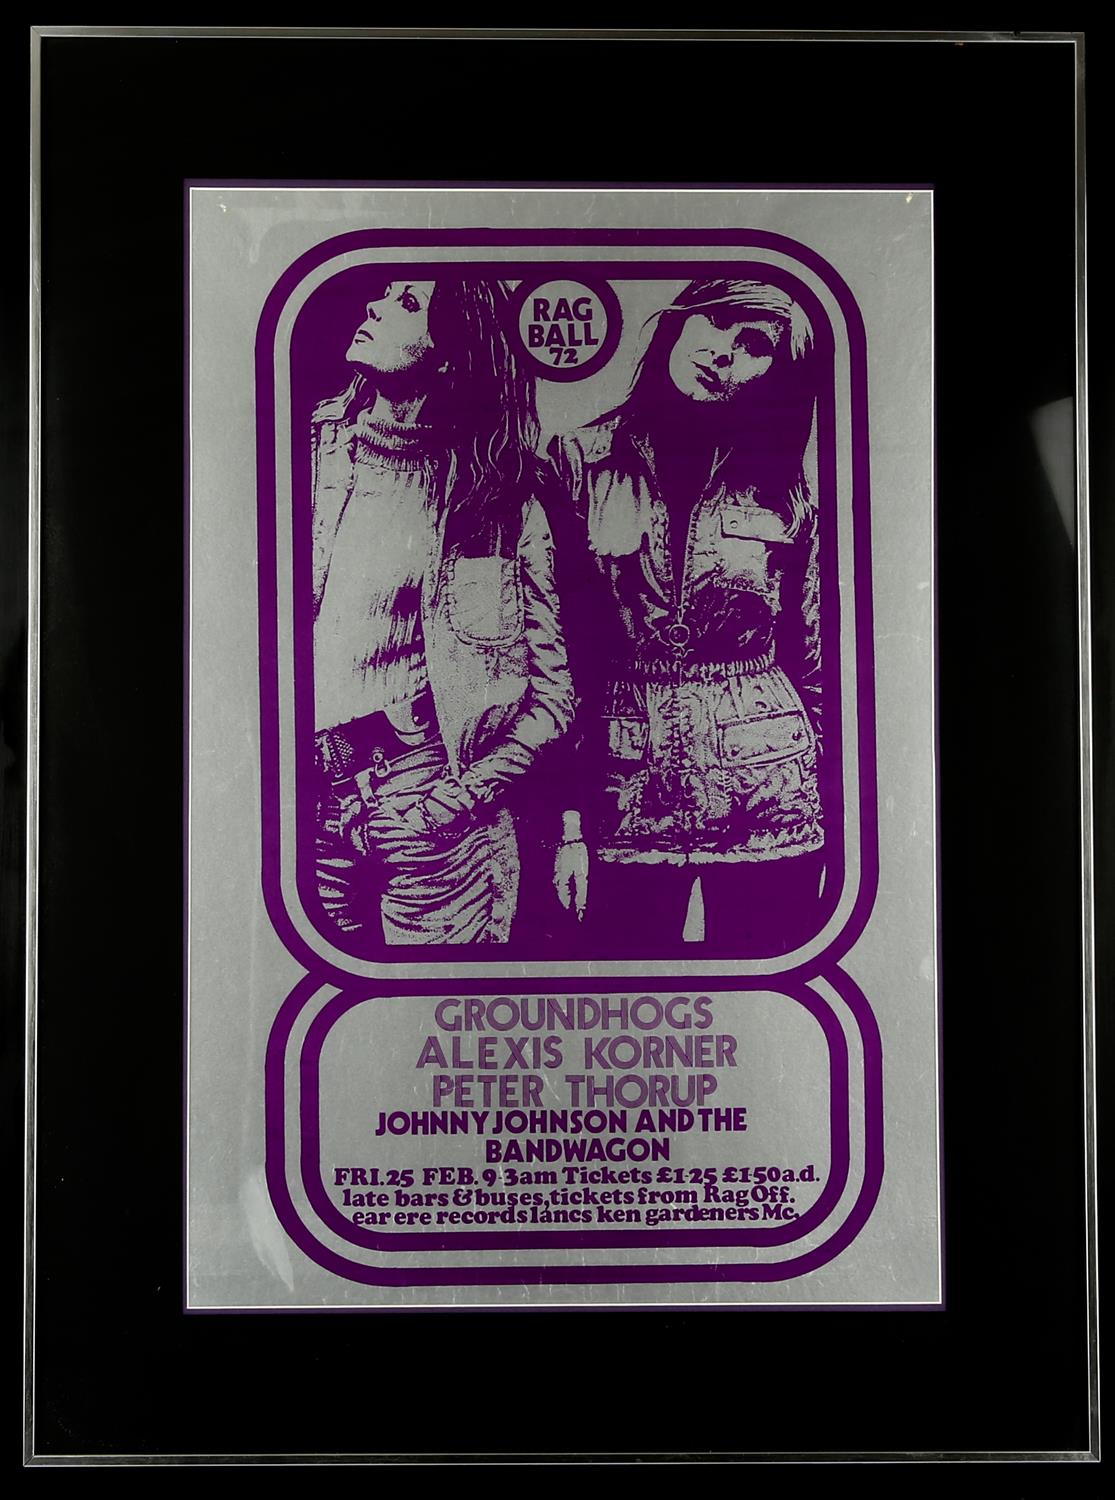 Groundhogs / Rag Ball 72' Music Concert Poster. Lancaster University, 25 February 1972.